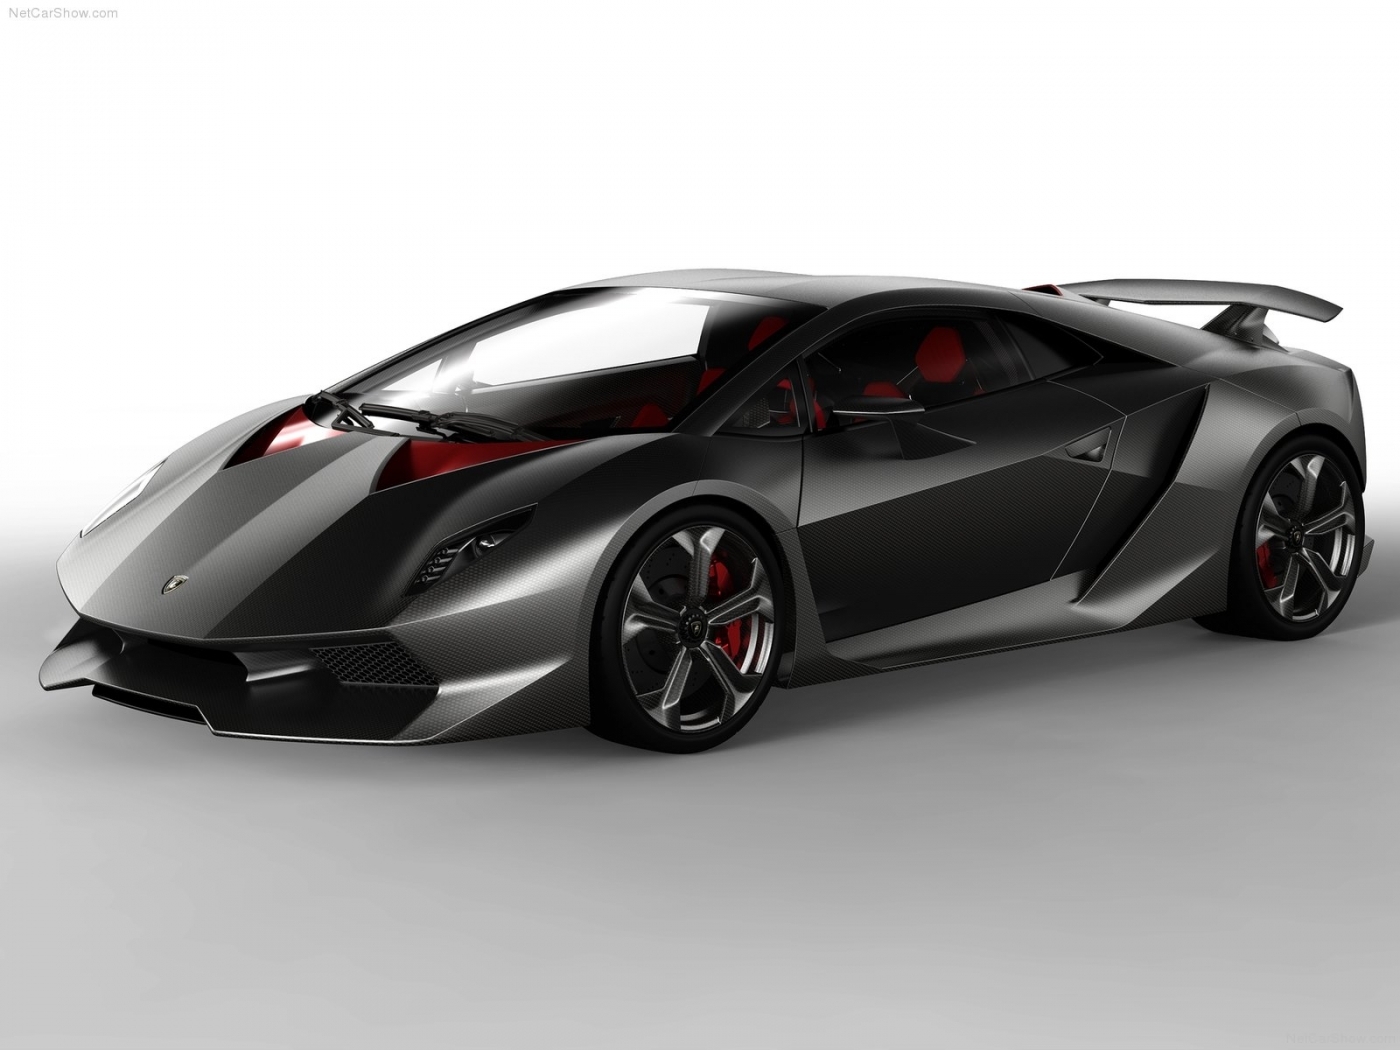 Download mobile wallpaper Transport, Auto, Lamborghini for free.